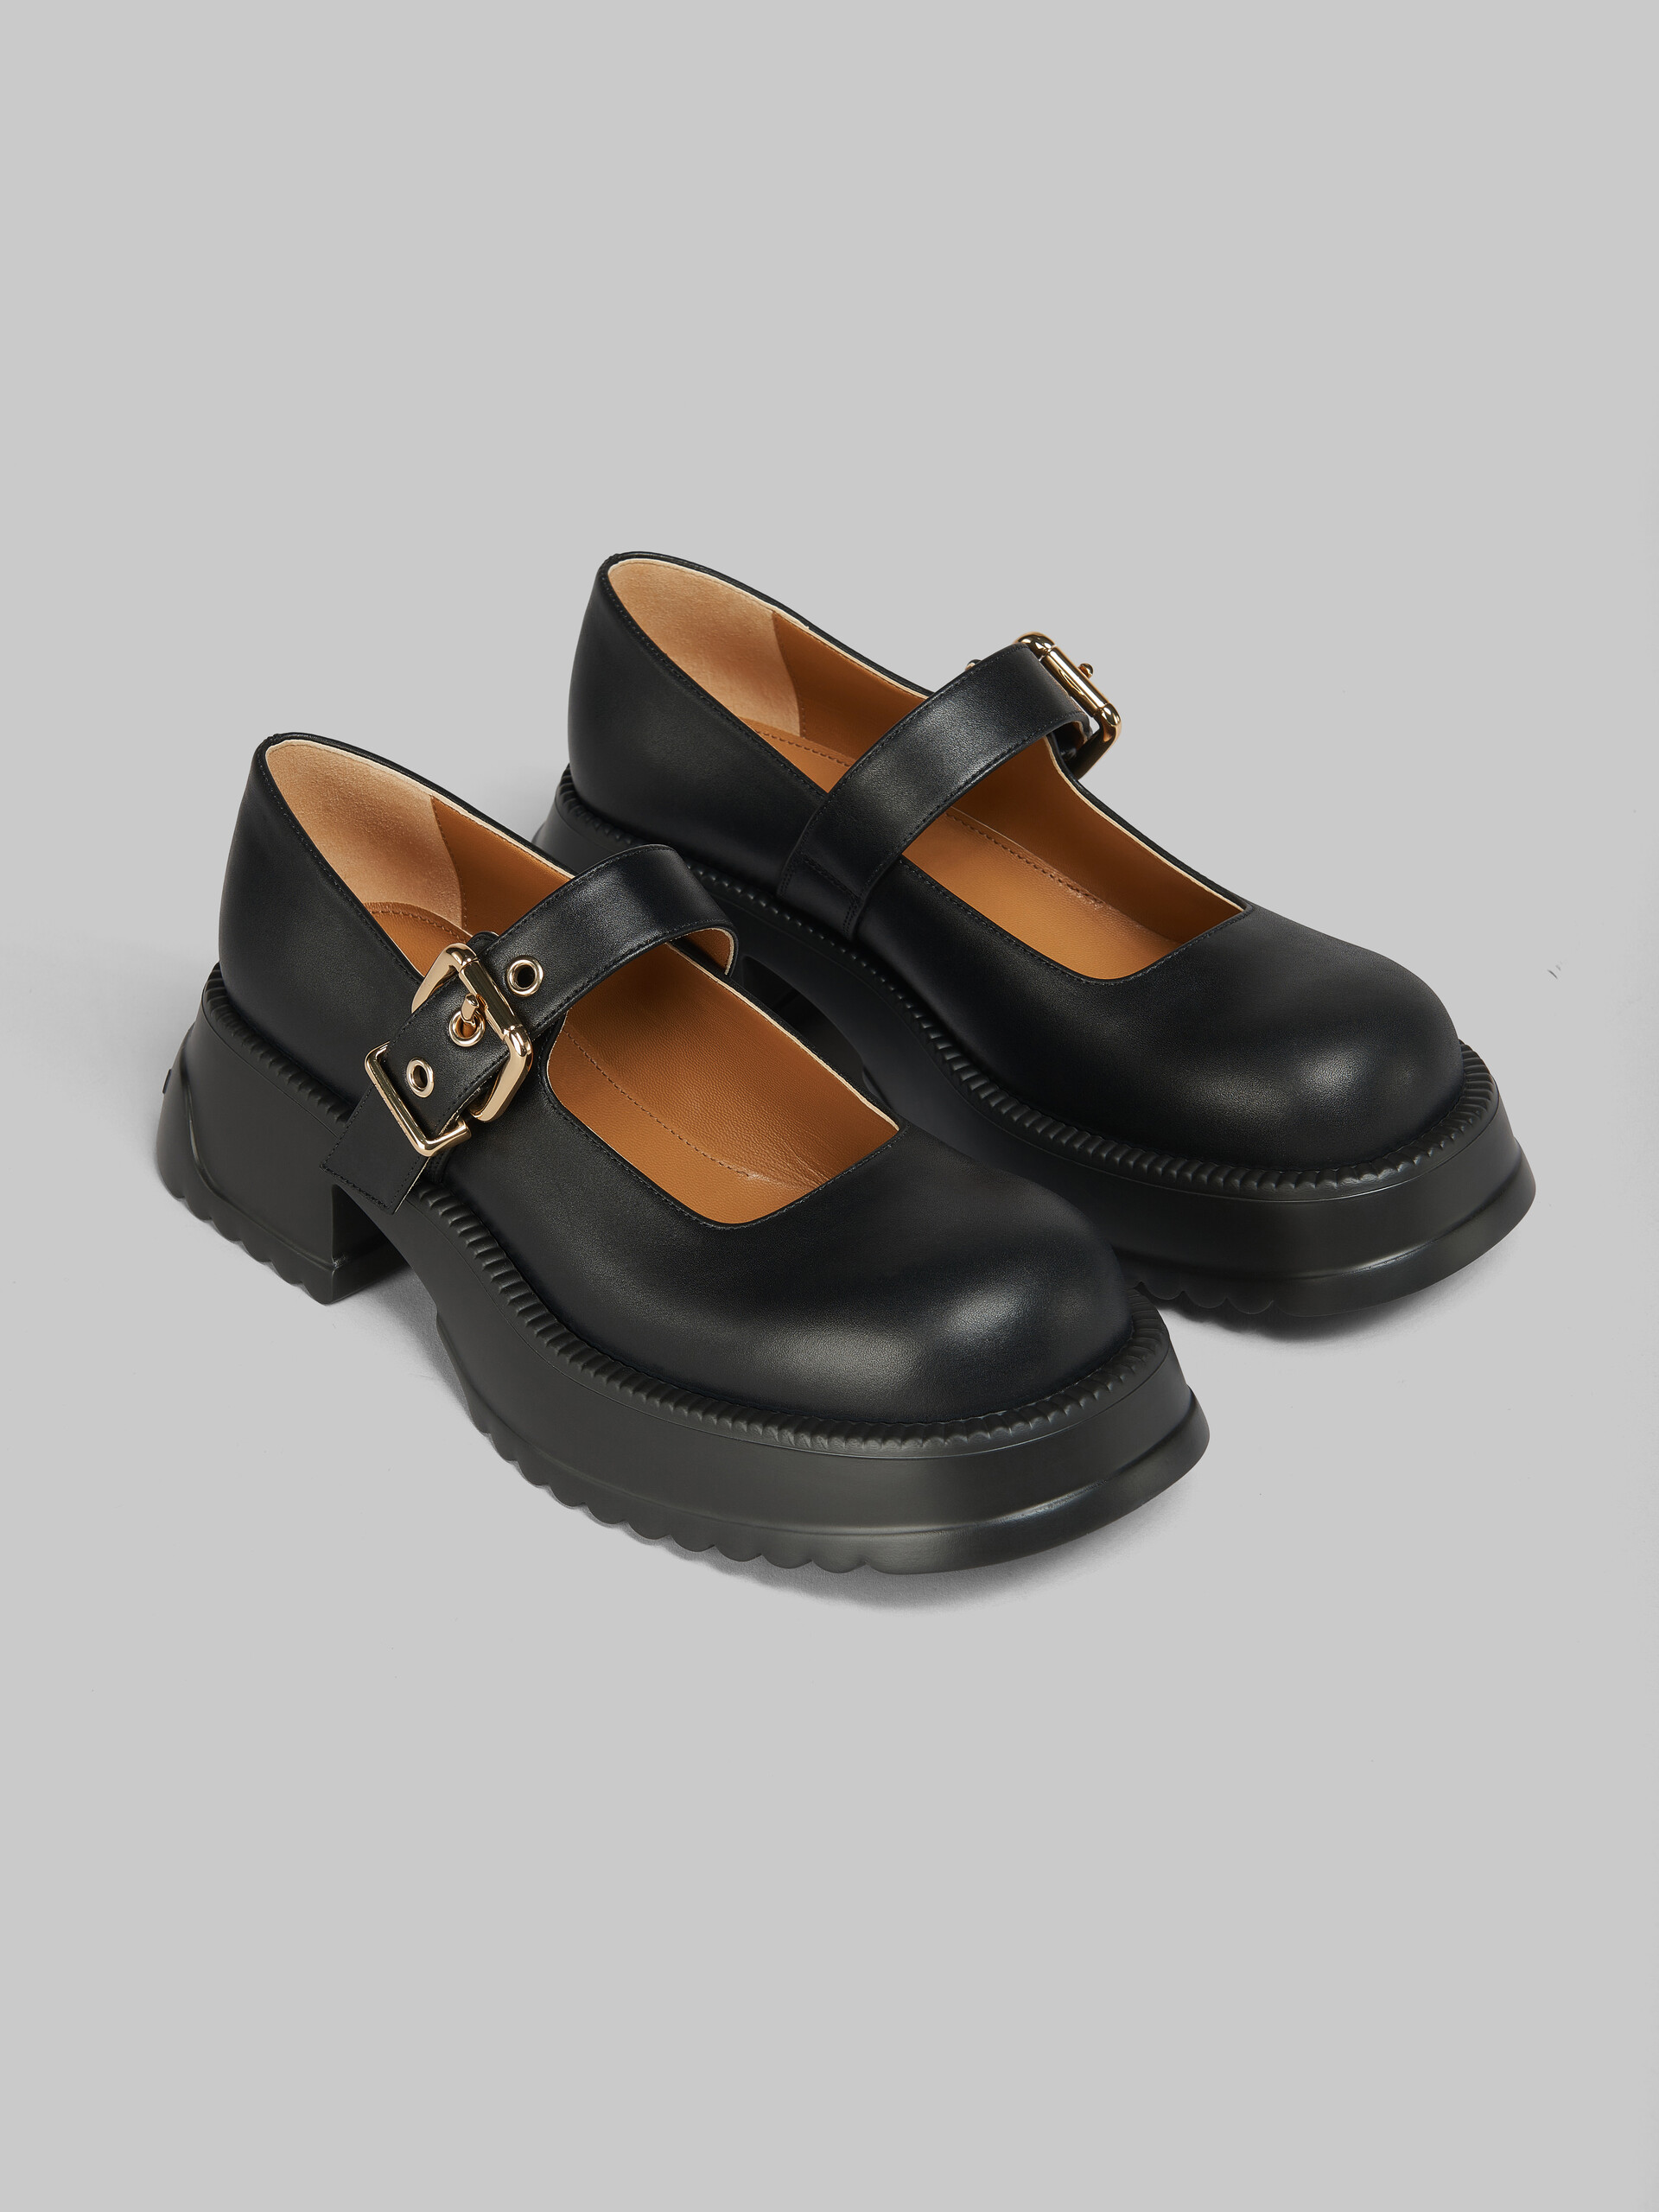 Zapatos estilo Mary Jane de piel negra con suela de plataforma - Sneakers - Image 5